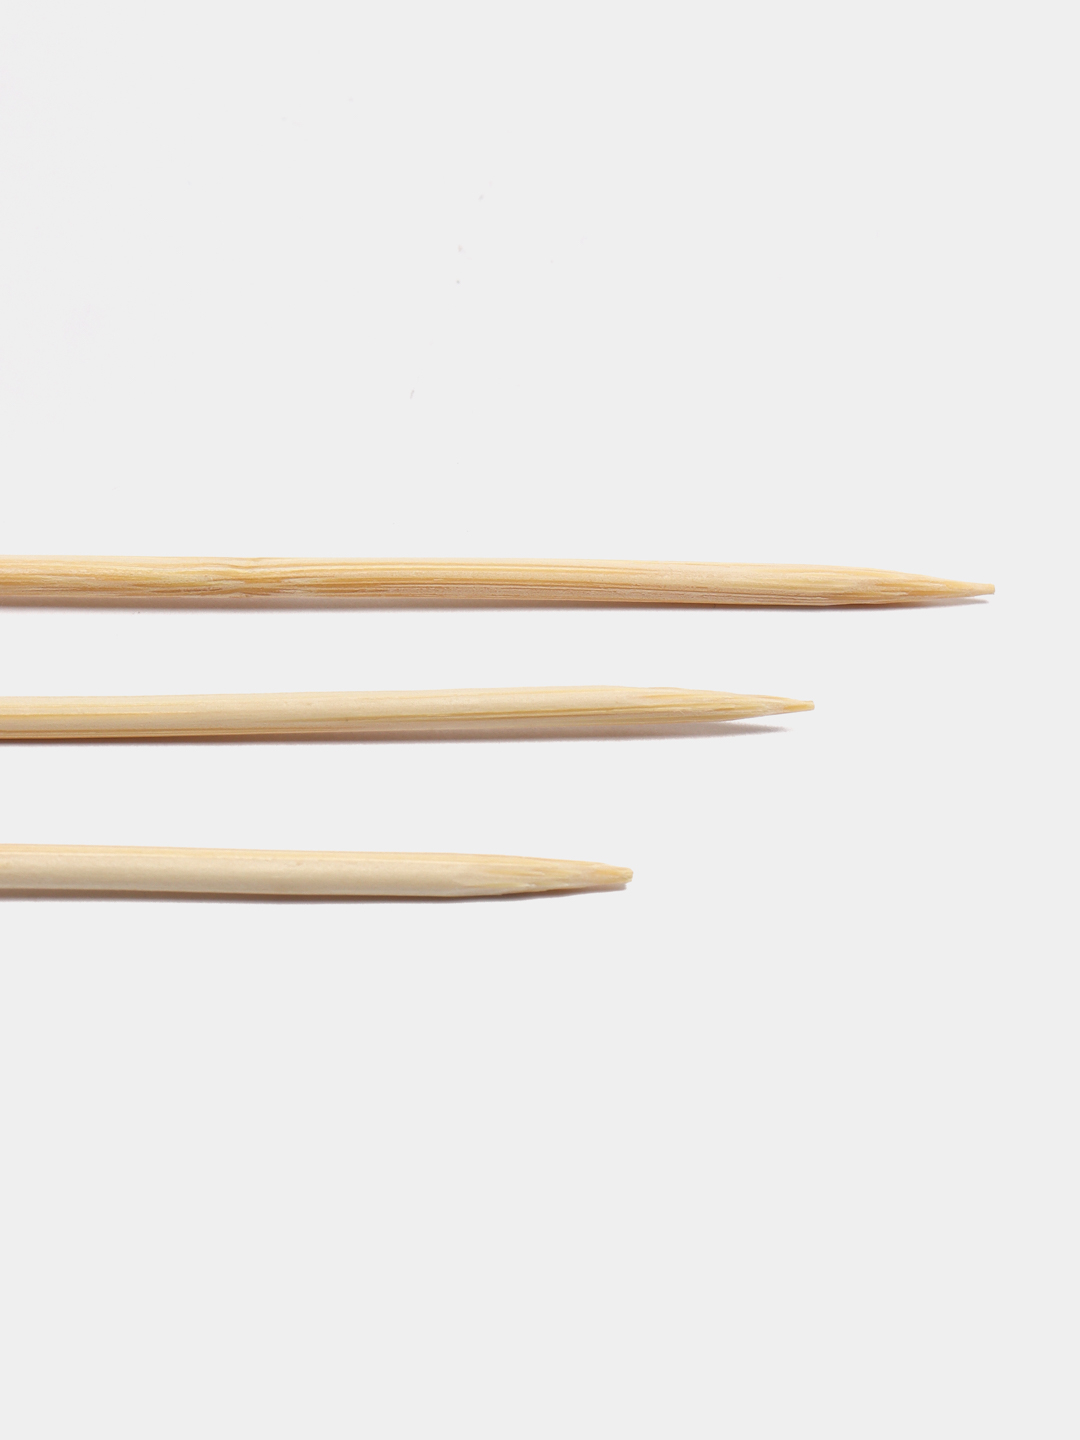  шпажки шампуры из бамбука, Размеры: 15/20/25/30 см, 100 штук .